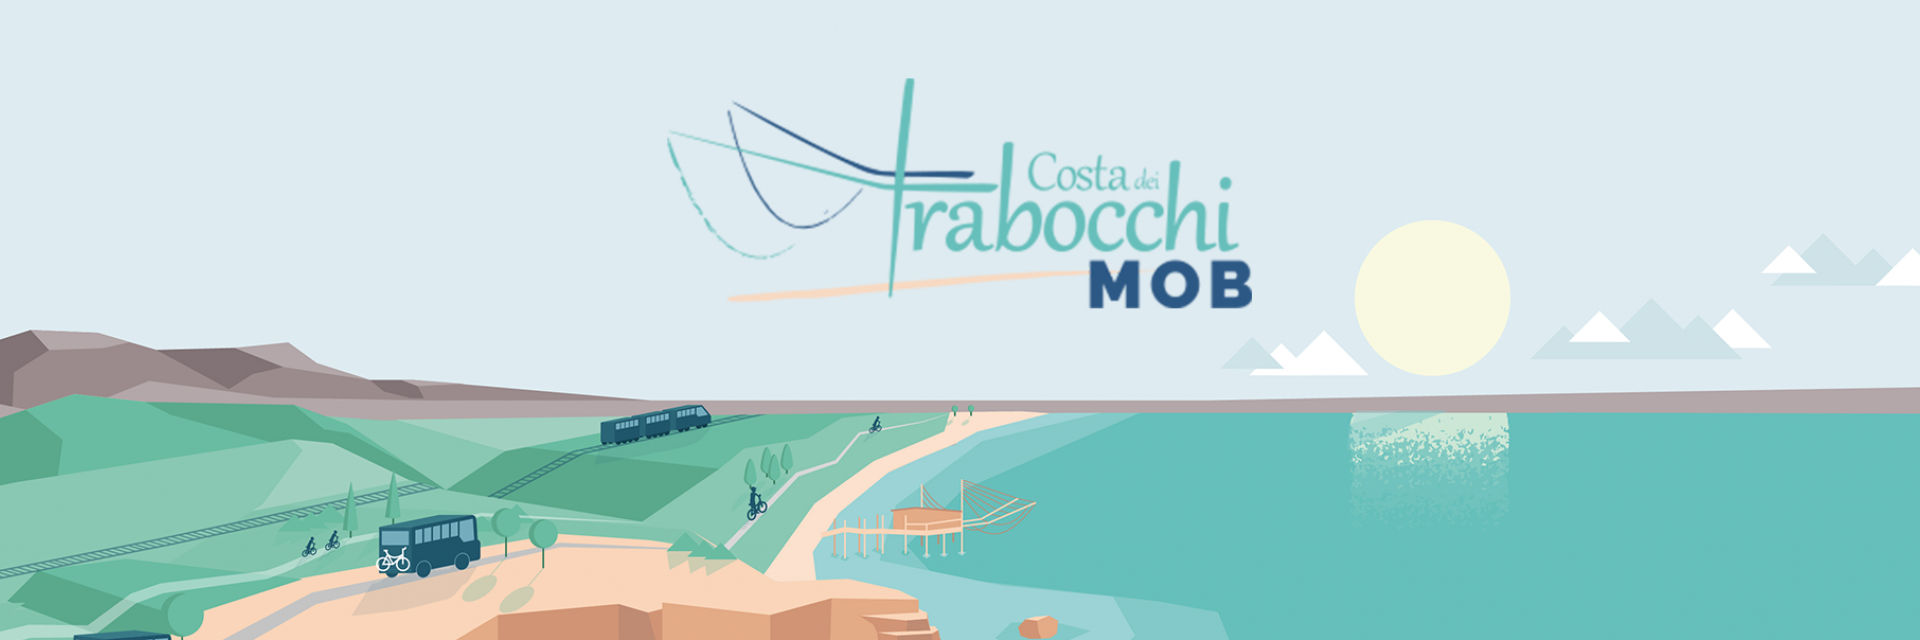 CostadeitrabocchiMOB Logo